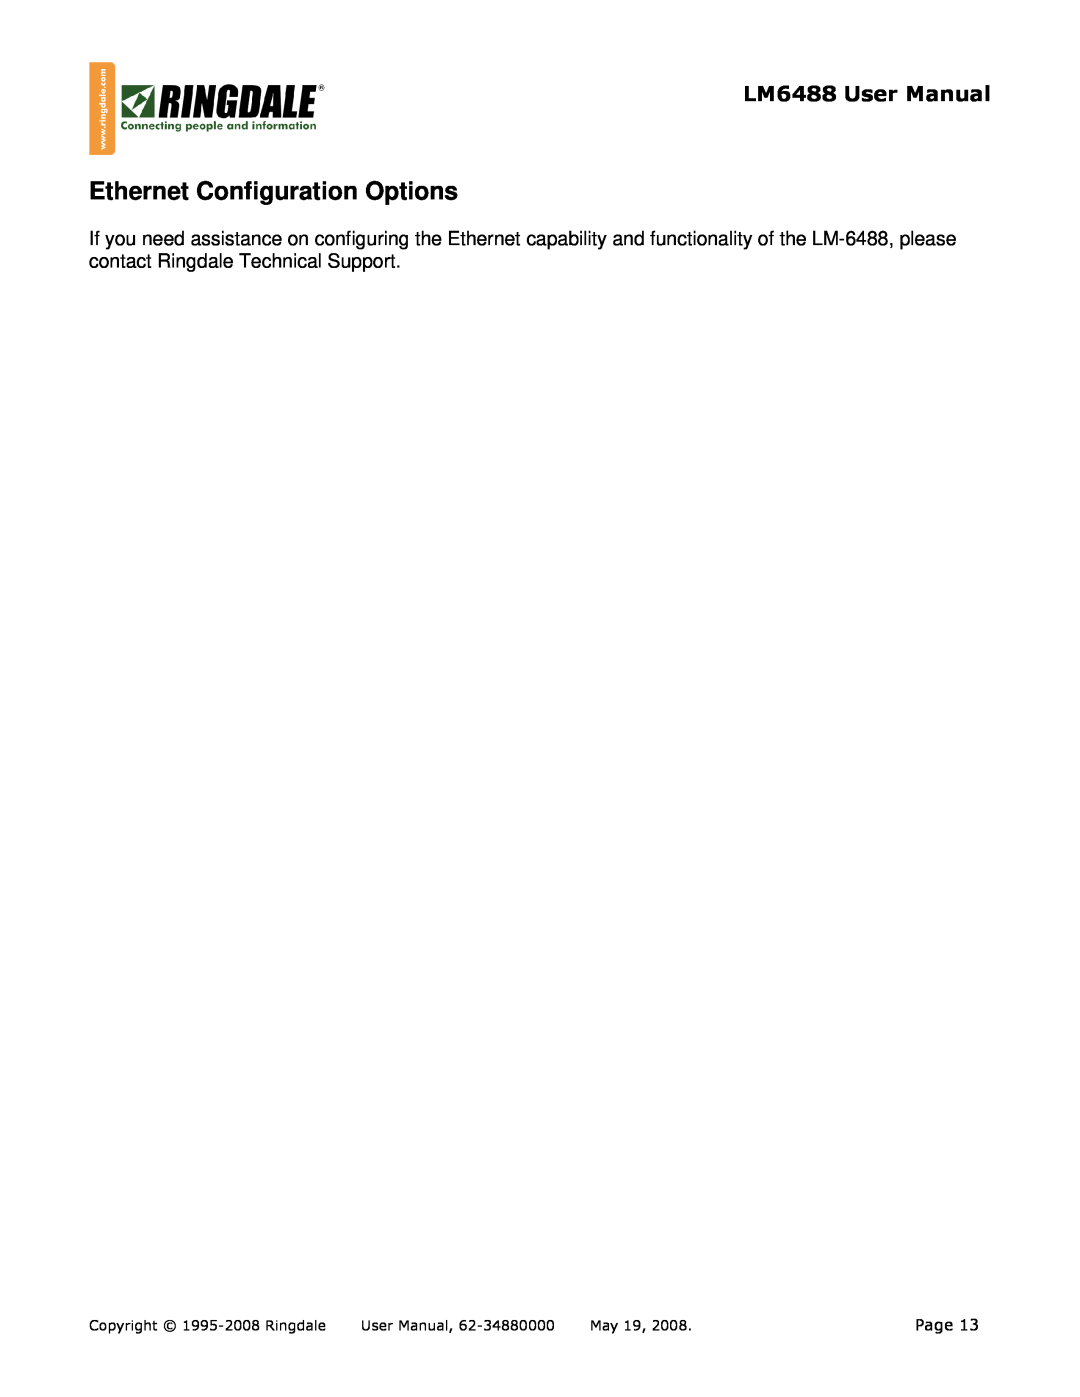 Ringdale LM-6488 user manual Ethernet Configuration Options, LM6488 User Manual, Page, Copyright 1995-2008 Ringdale, May 19 